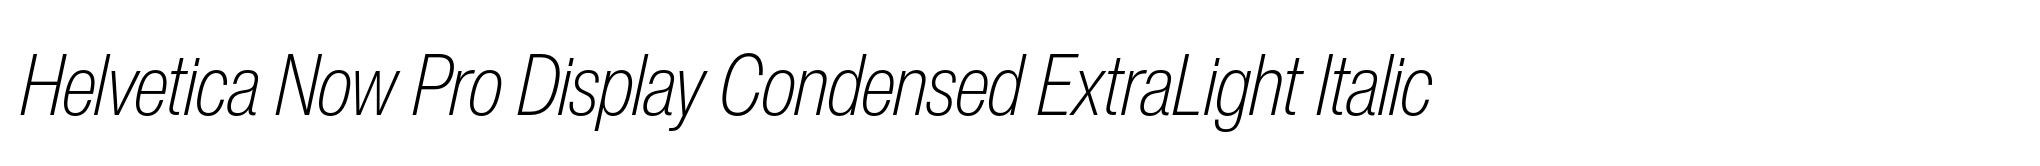 Helvetica Now Pro Display Condensed ExtraLight Italic image